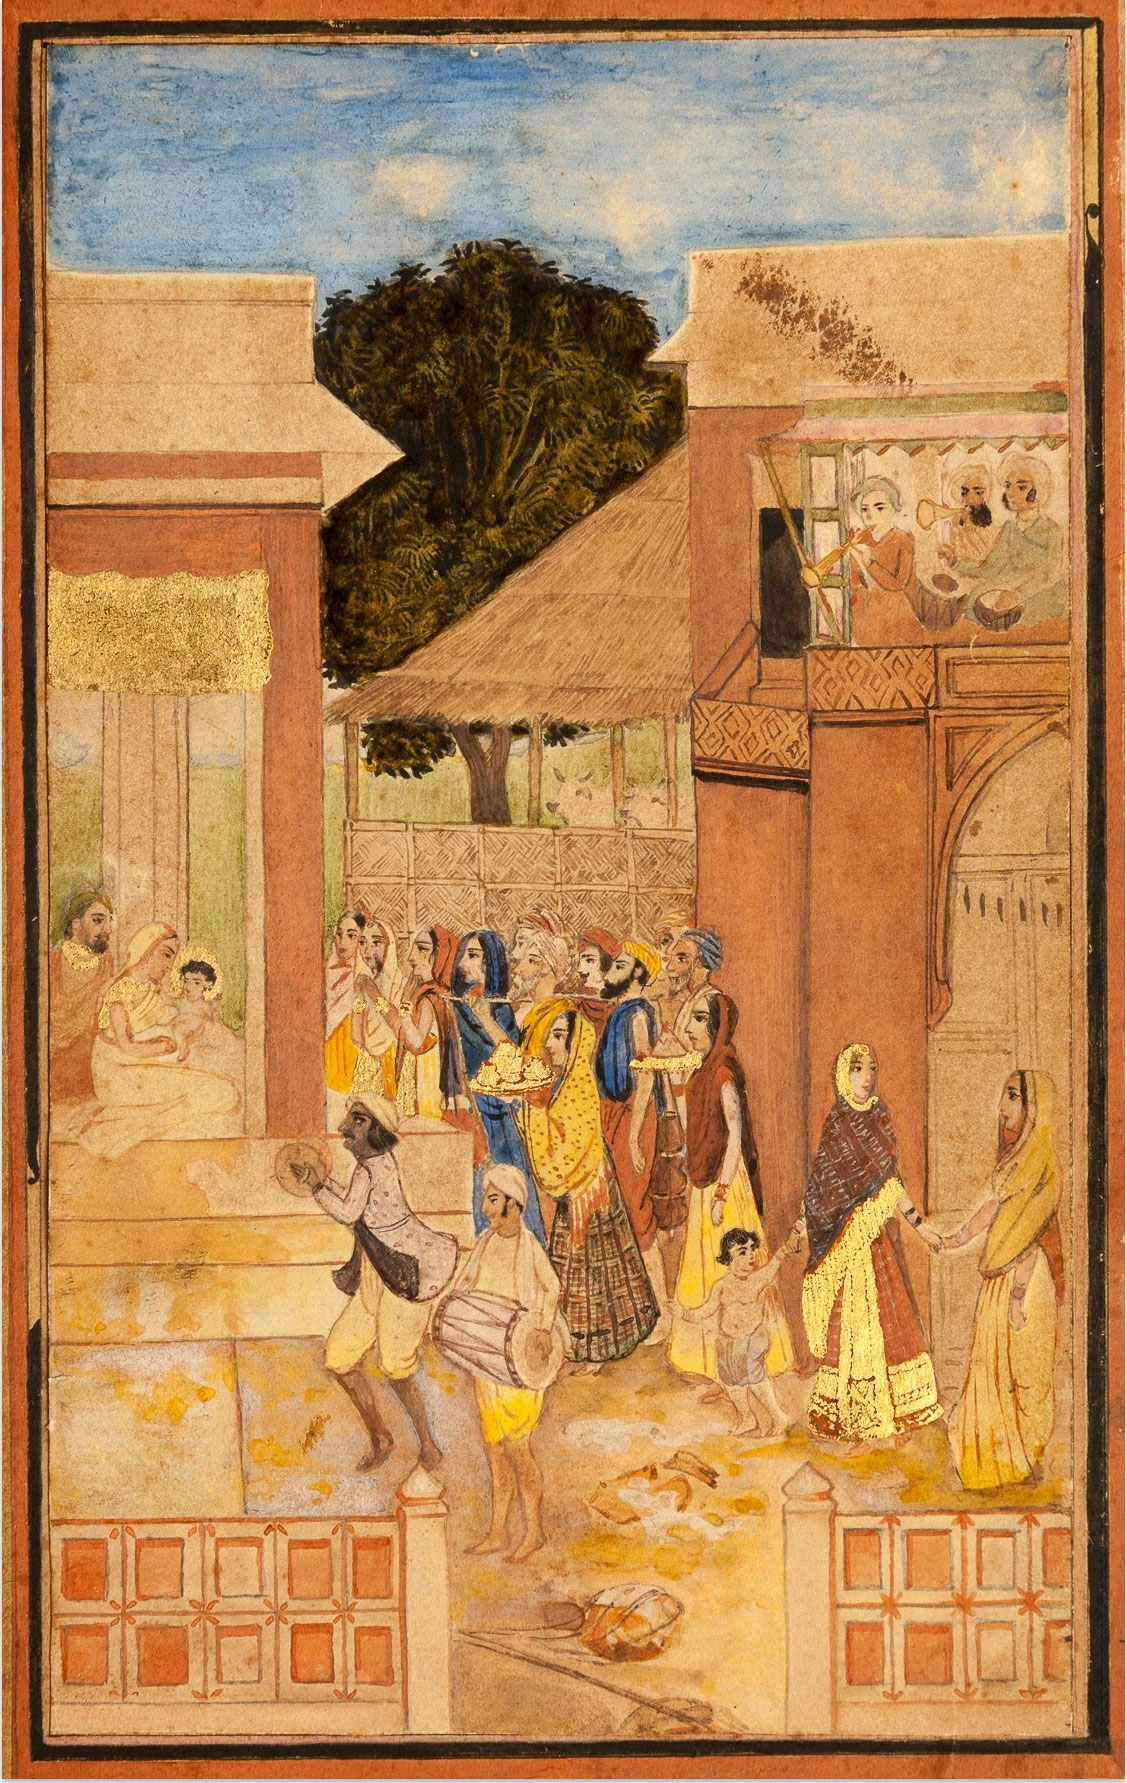 Birth of Krishna by Abanindranath Tagore 1895-1897